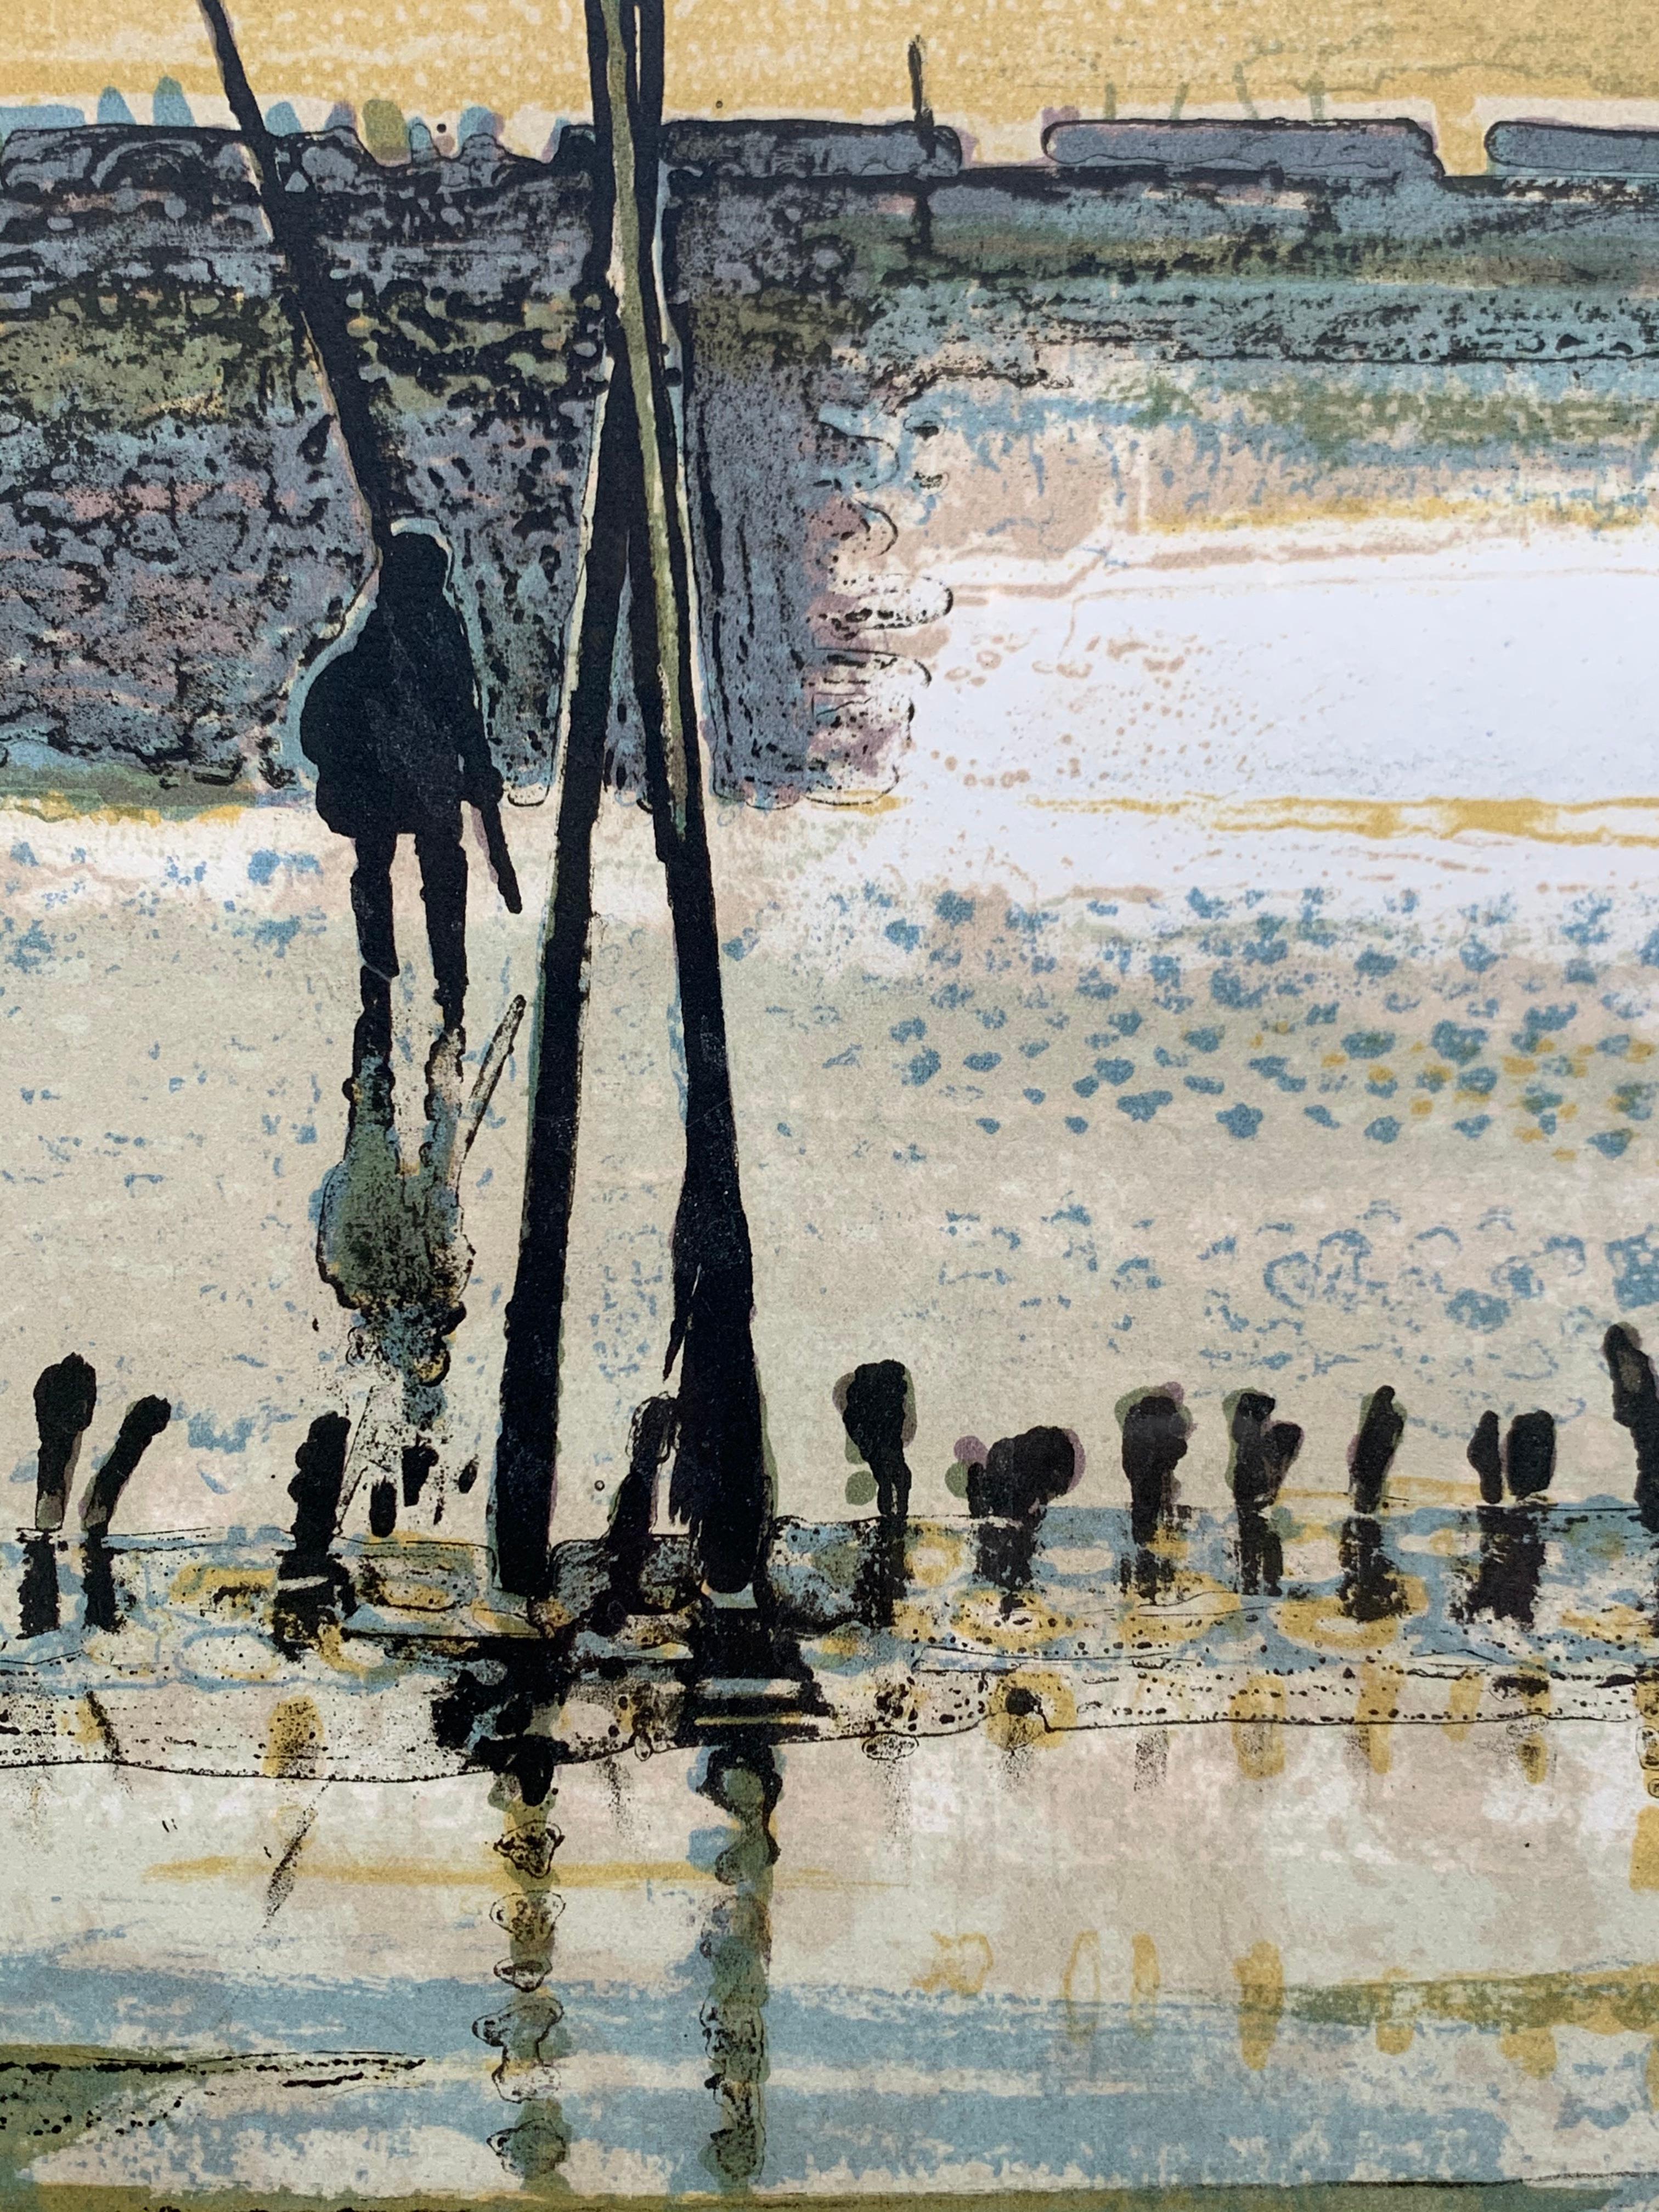 La Plage, Arcachon, Marée basse. (French beach landscape)  - Post-Impressionist Print by René Genis